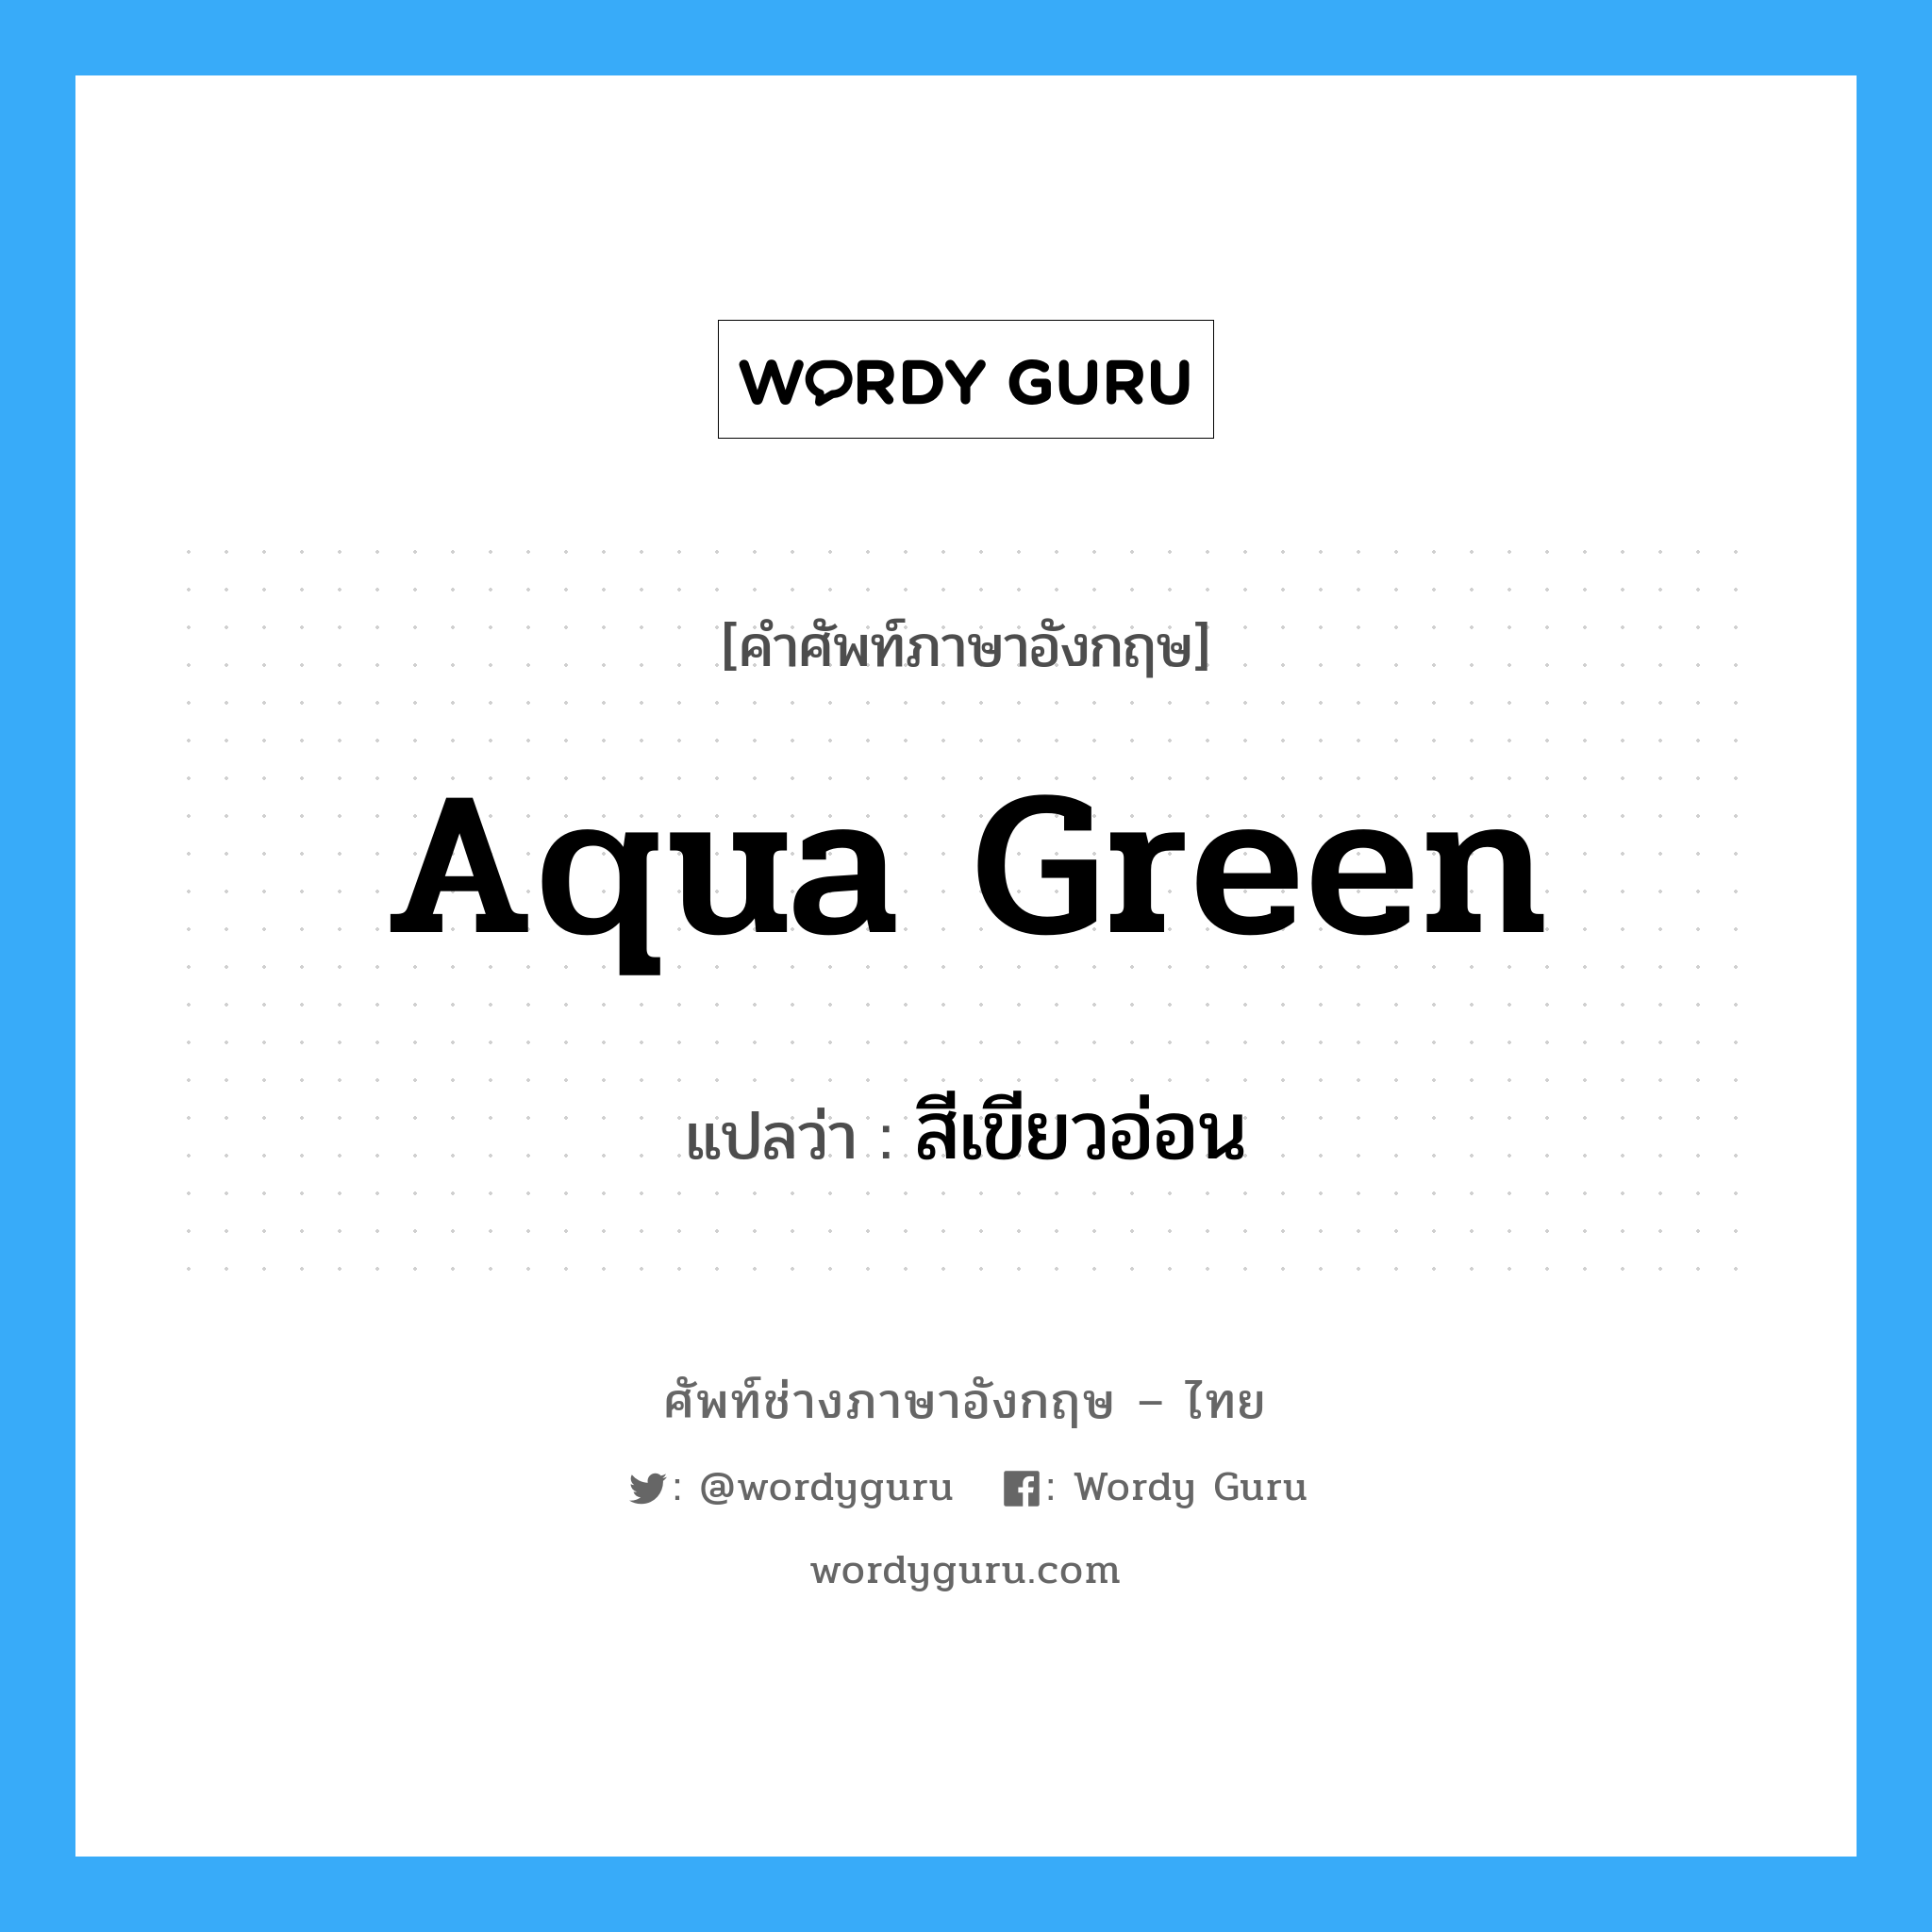 aqua green แปลว่า?, คำศัพท์ช่างภาษาอังกฤษ - ไทย aqua green คำศัพท์ภาษาอังกฤษ aqua green แปลว่า สีเขียวอ่อน